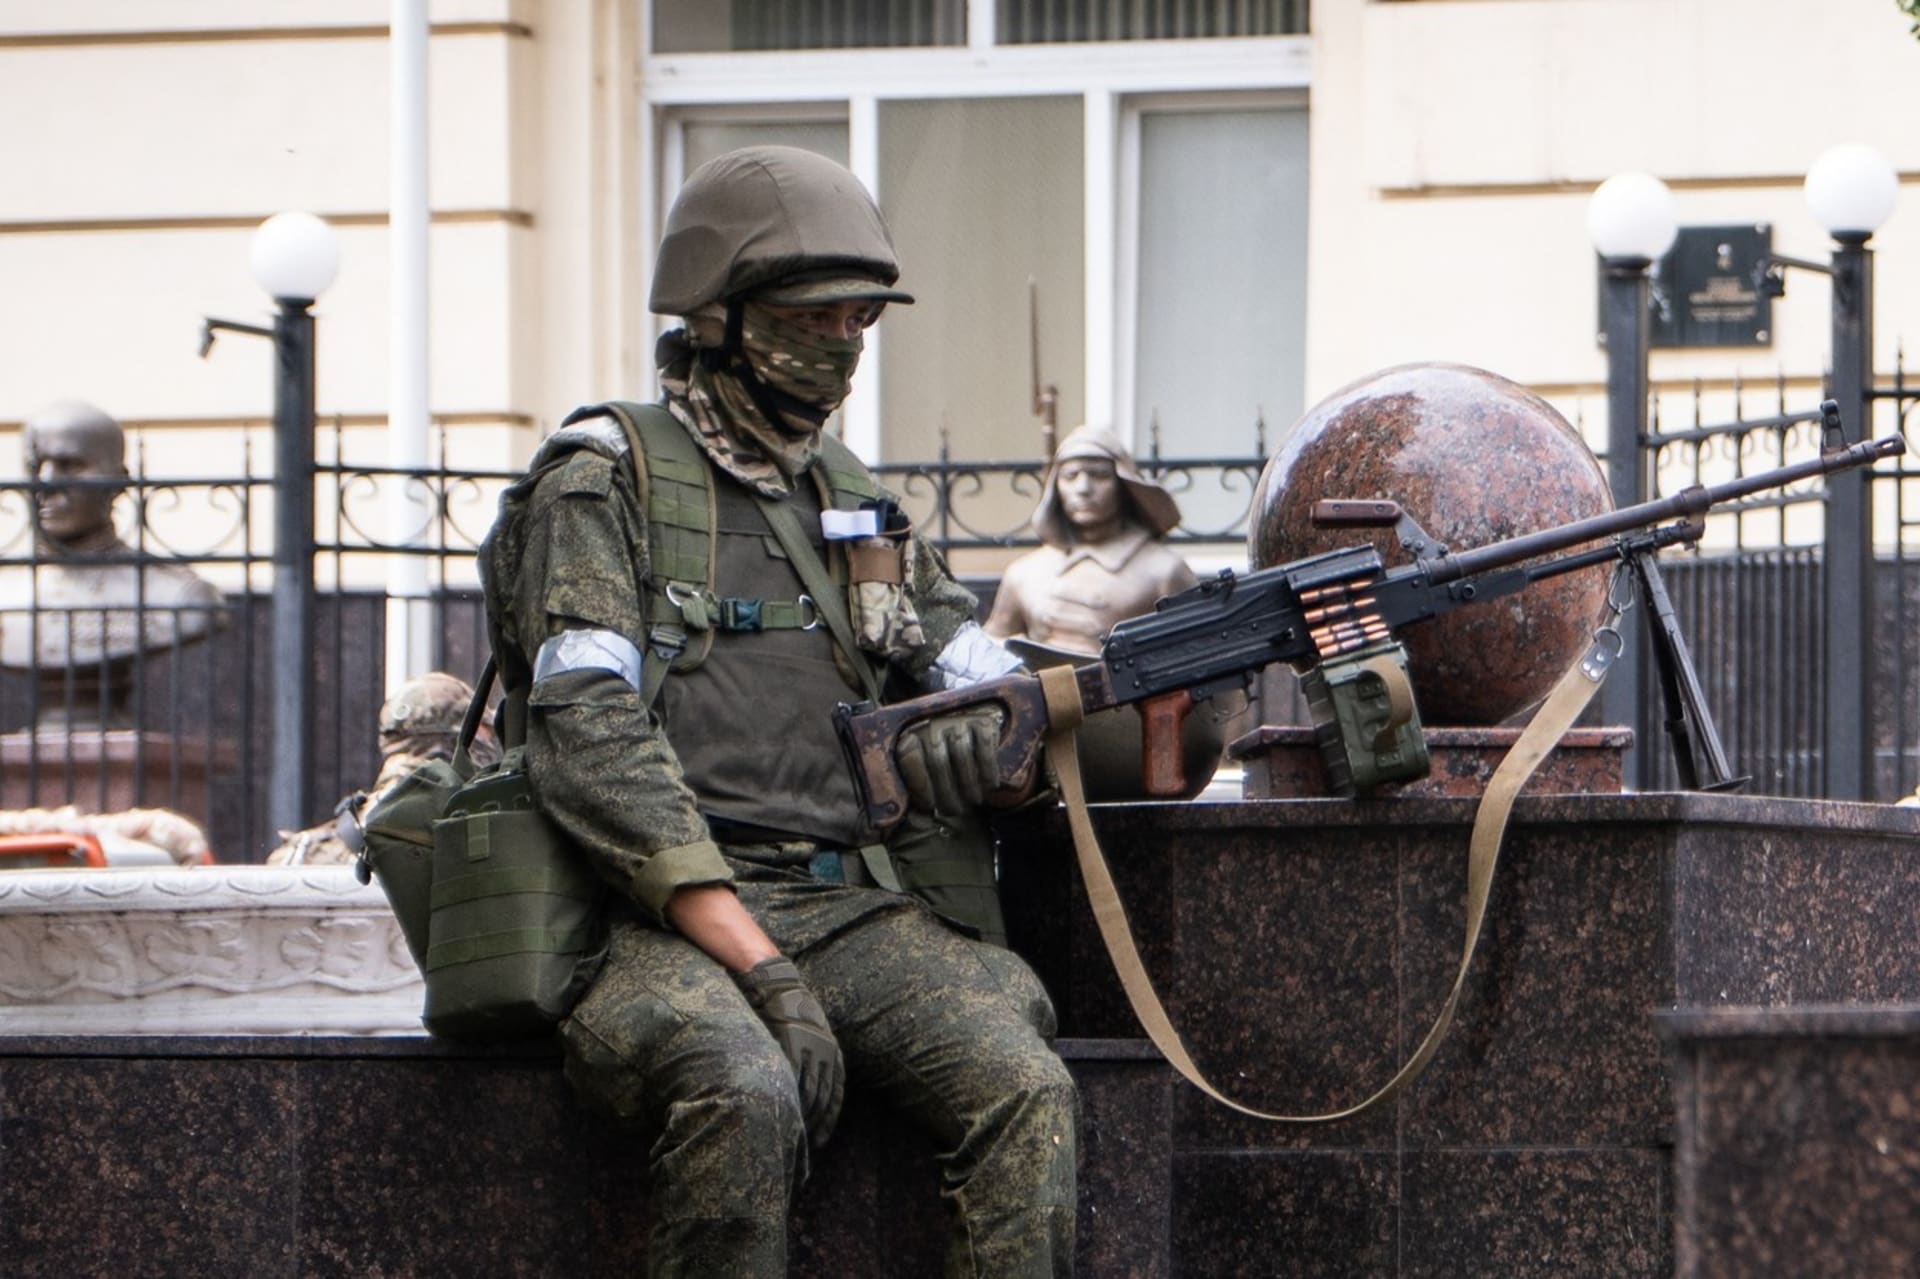 Zoldak Vagnerovy skupiny behem kratke vzpoury v Rostovu na Donu (24. 6. 2023)